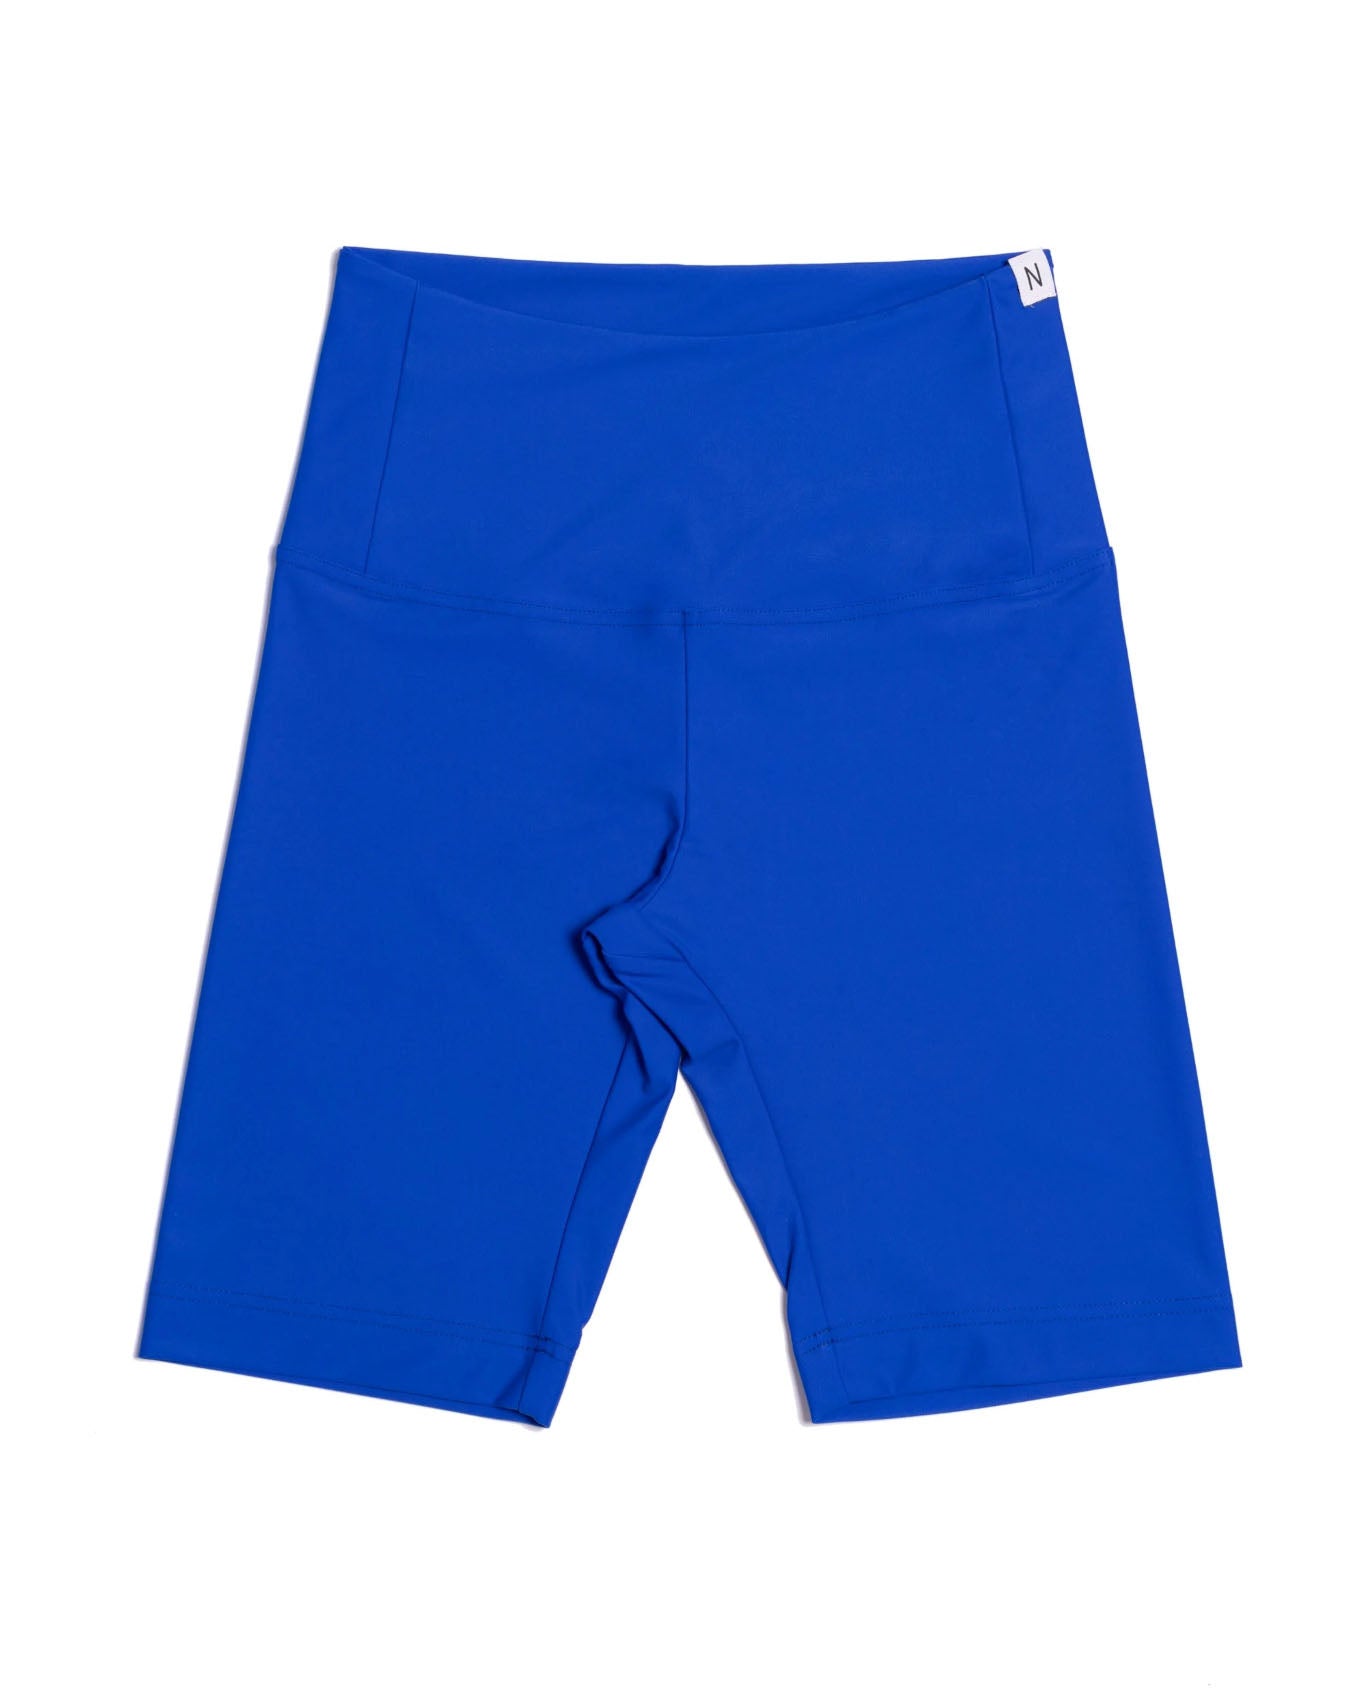 Net-Shorts - Airolo - Cobalt Blue